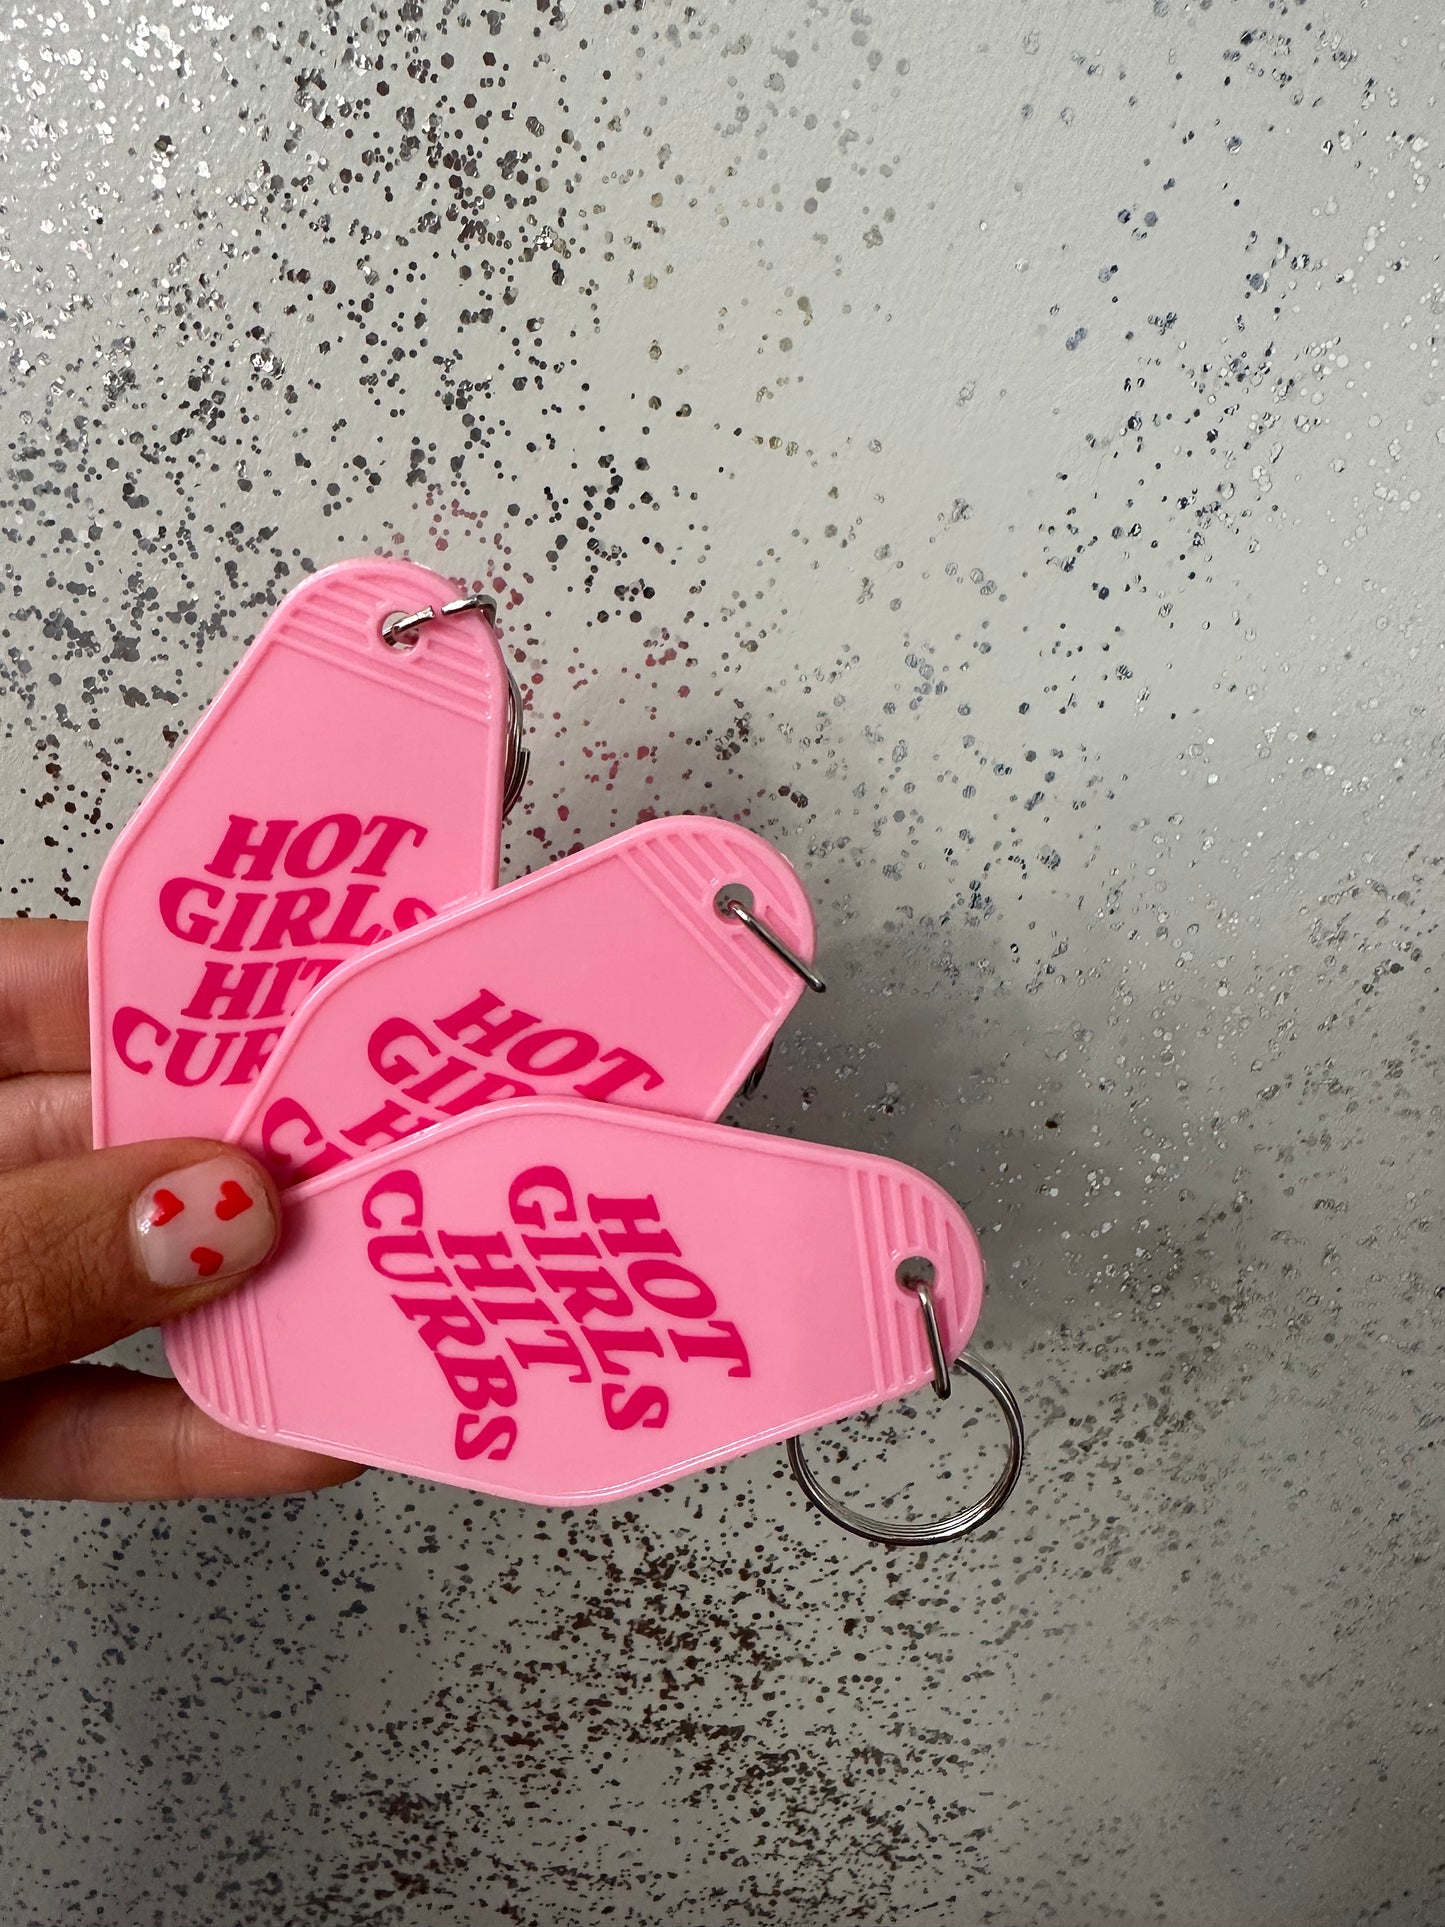 Hot Girls Hit Curbs Keychain